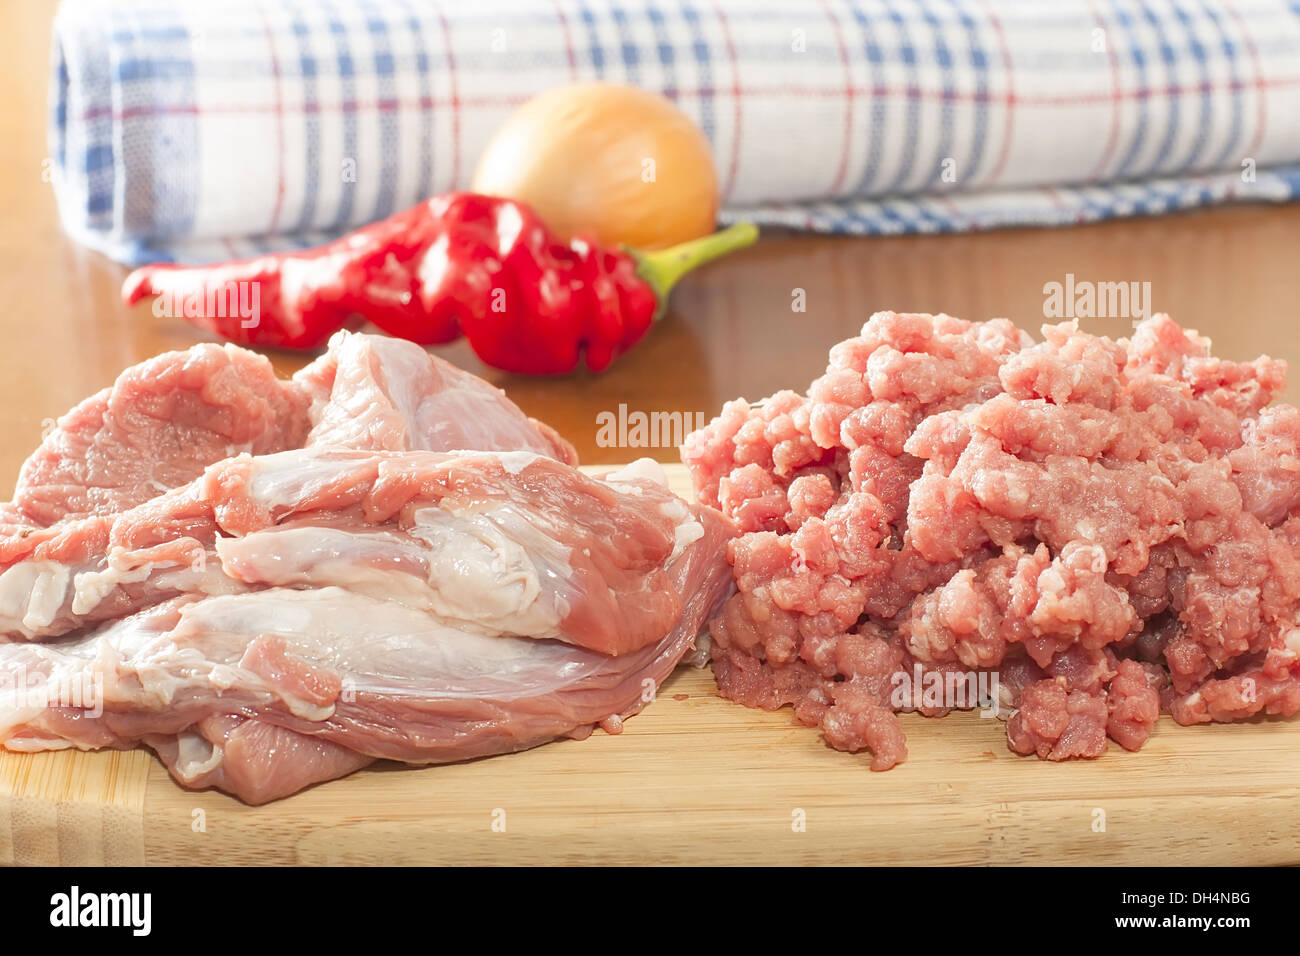 Interi pezzi di carne di manzo crudo con carne macinata su un tagliere Foto Stock